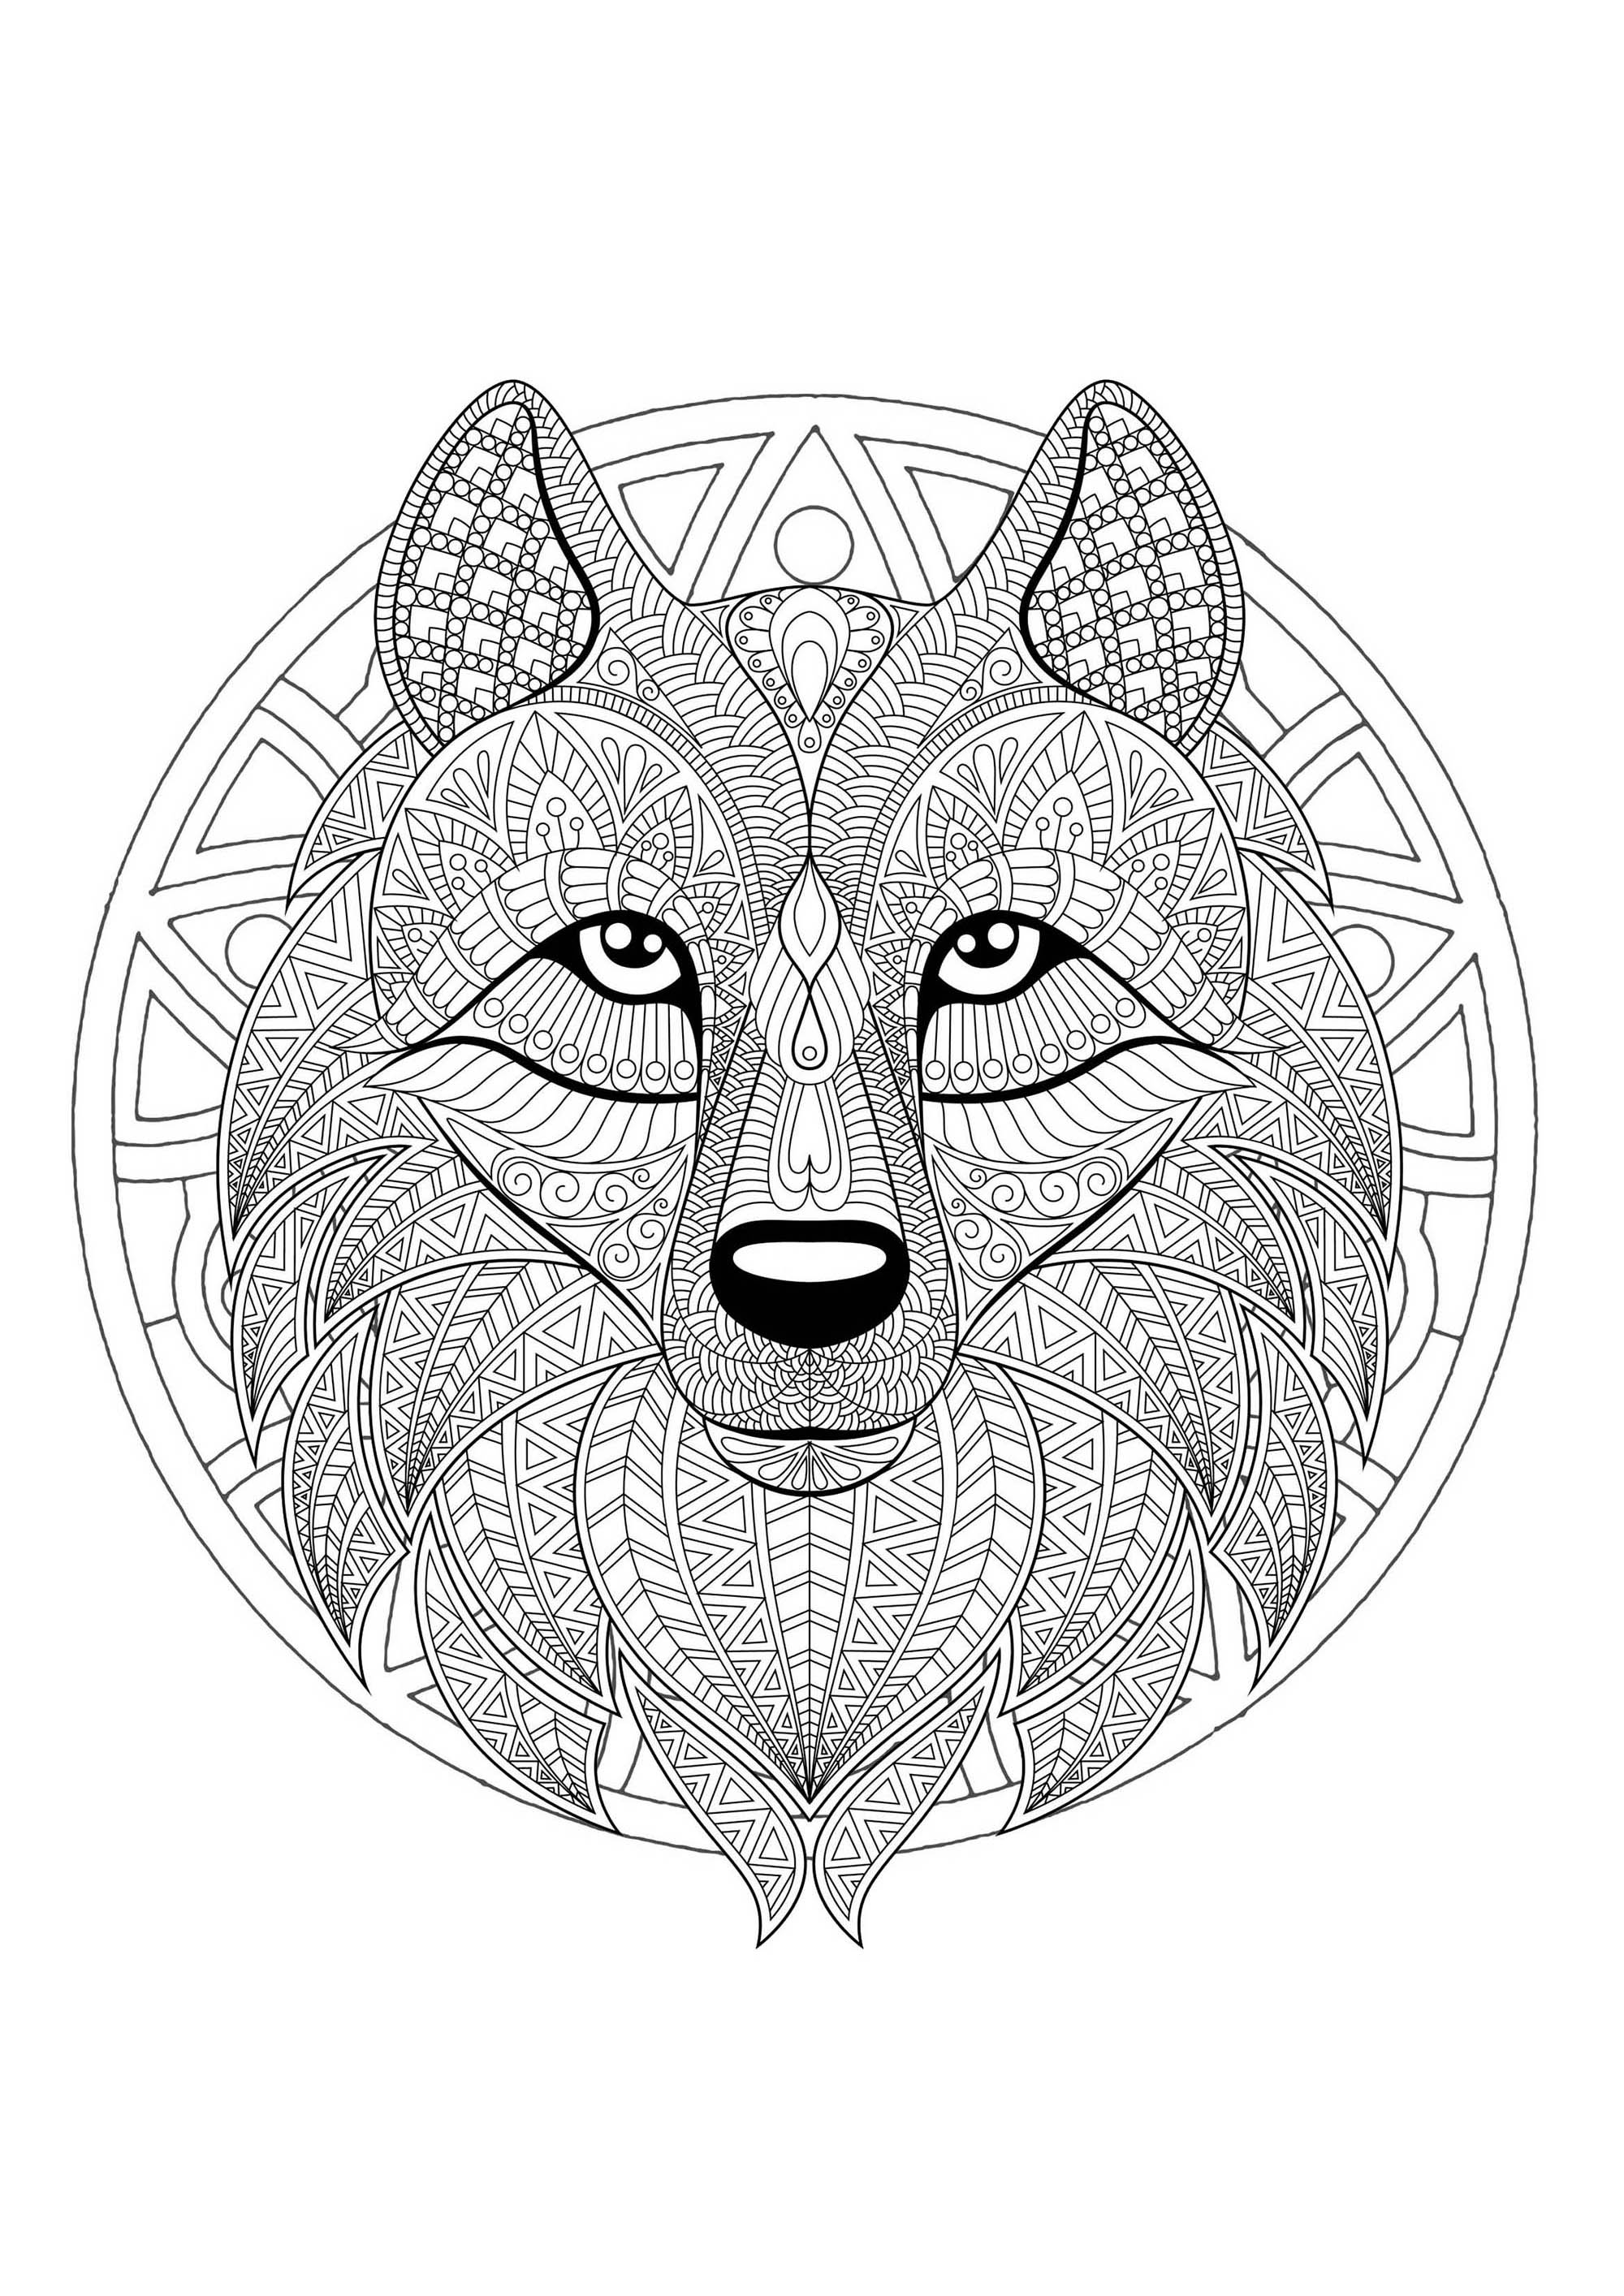 Un Mandala mettant en scène un joli loup, pour ceux qui préfèrent mettre en couleur des éléments concrets et vivants.